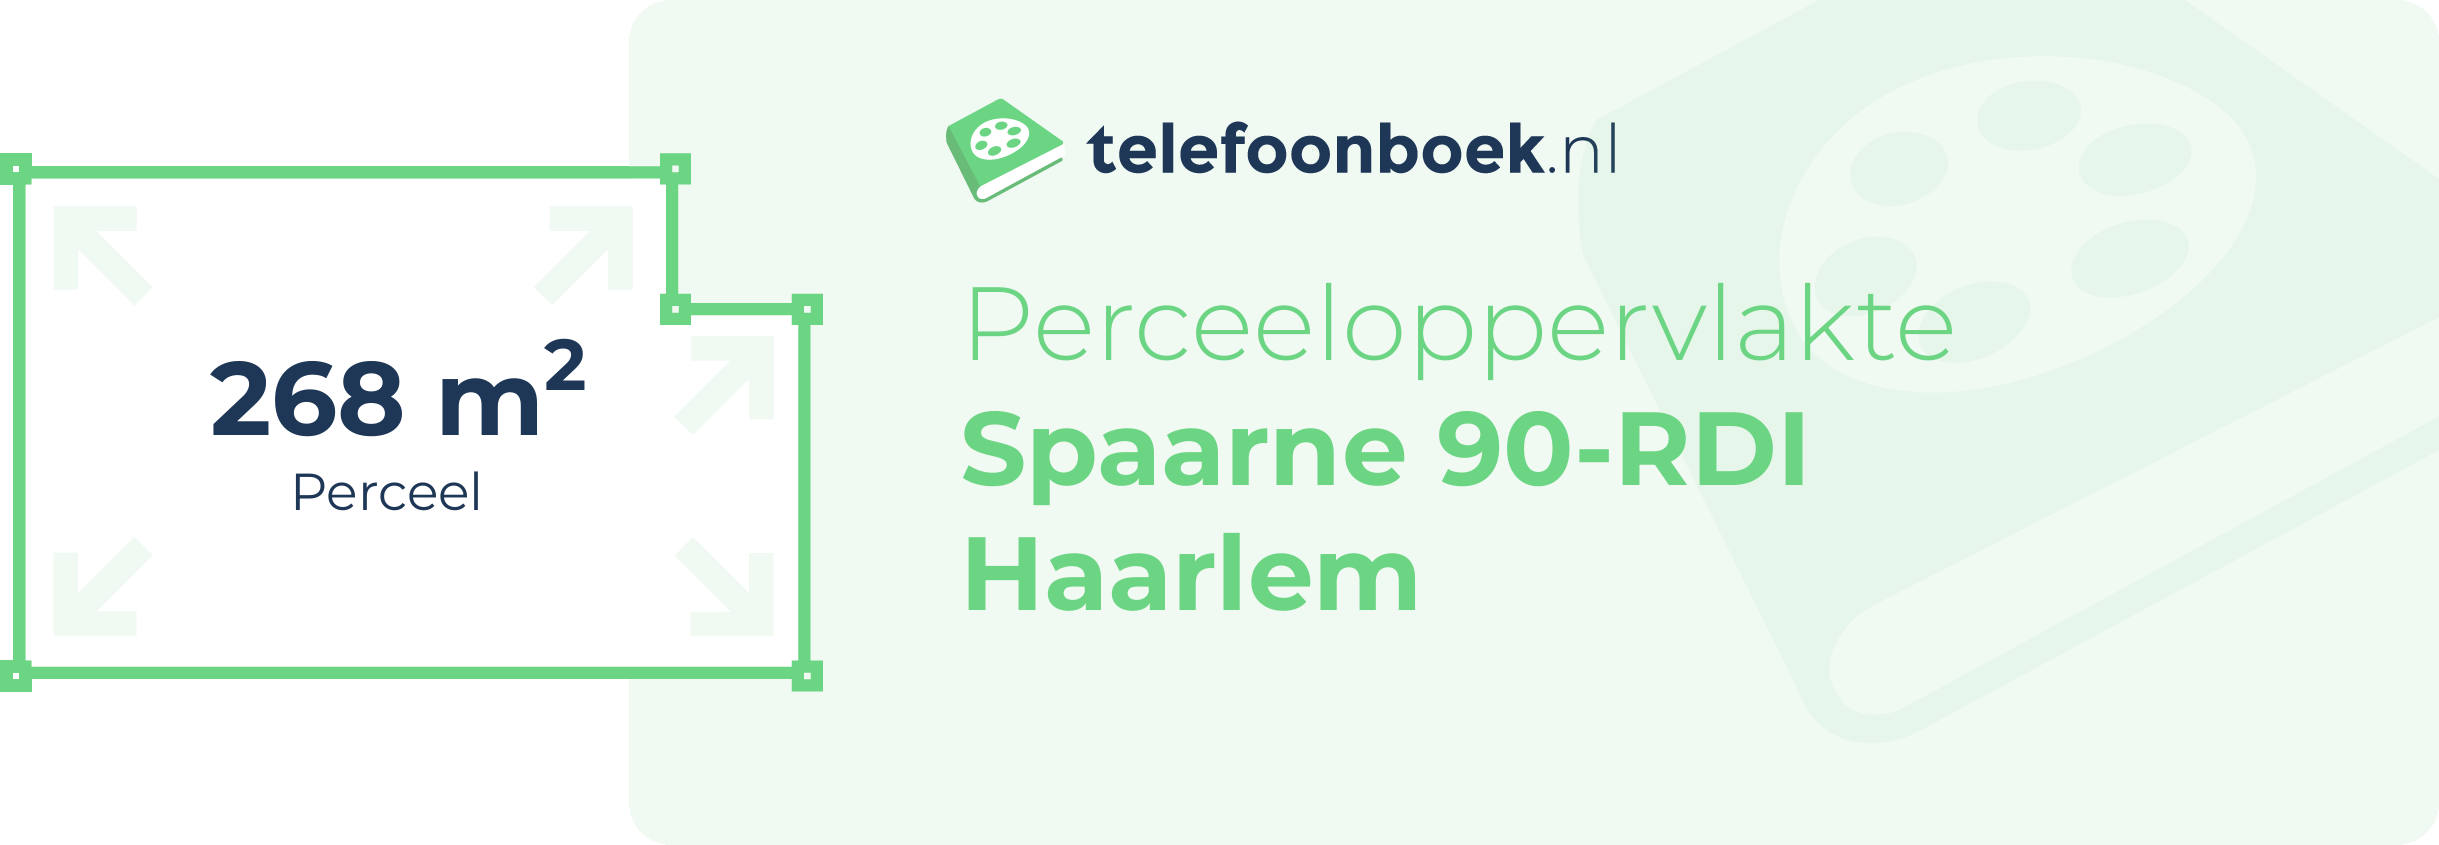 Perceeloppervlakte Spaarne 90-RDI Haarlem